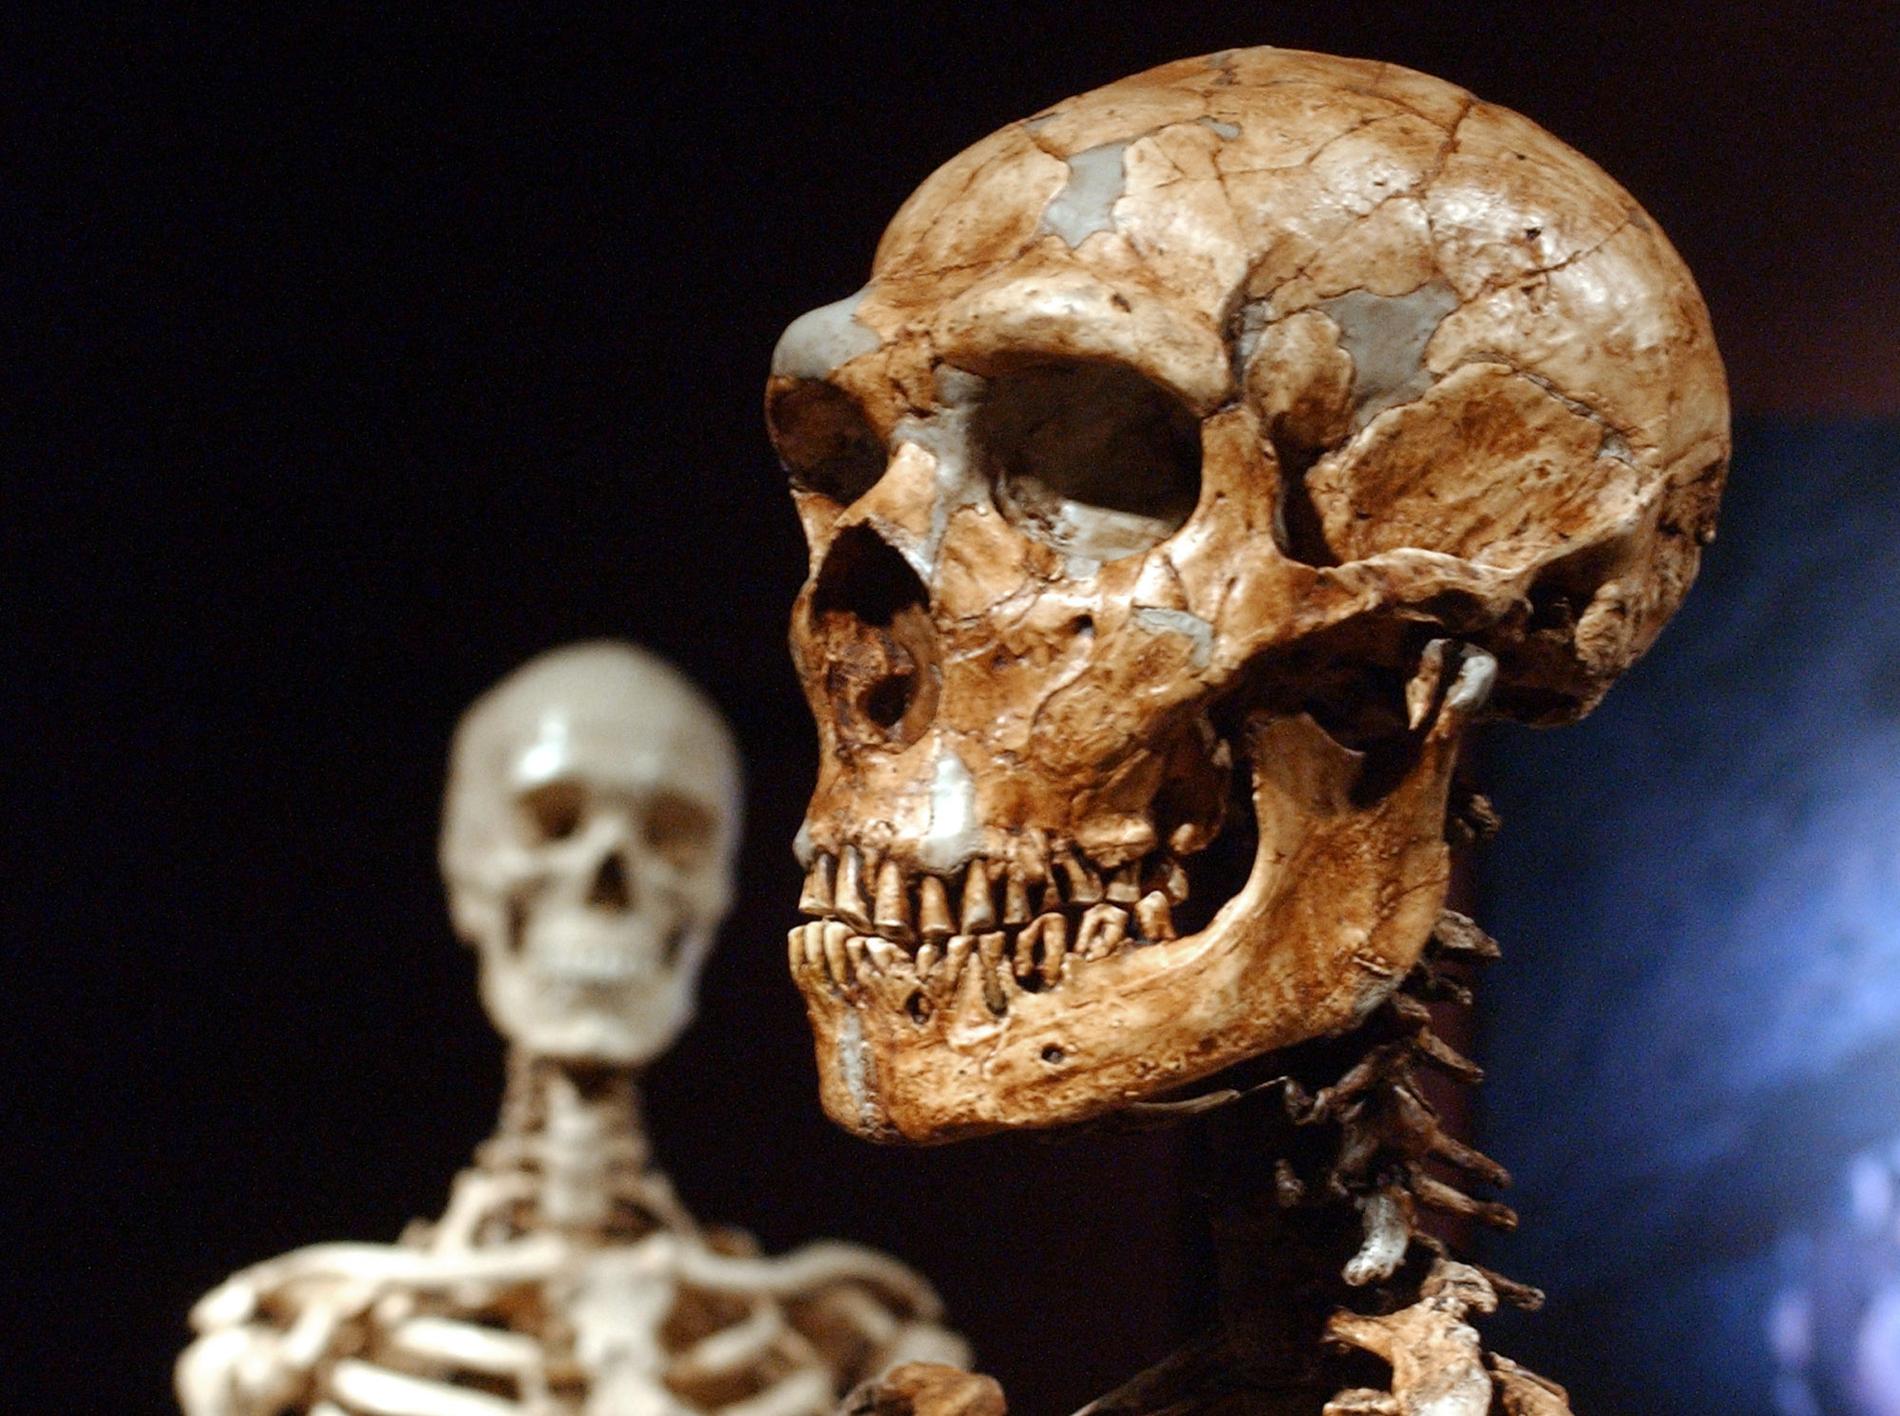 Neandertalmänniskan, till höger, kunde konsten att göra upp eld, precis som vår egen art, till vänster.